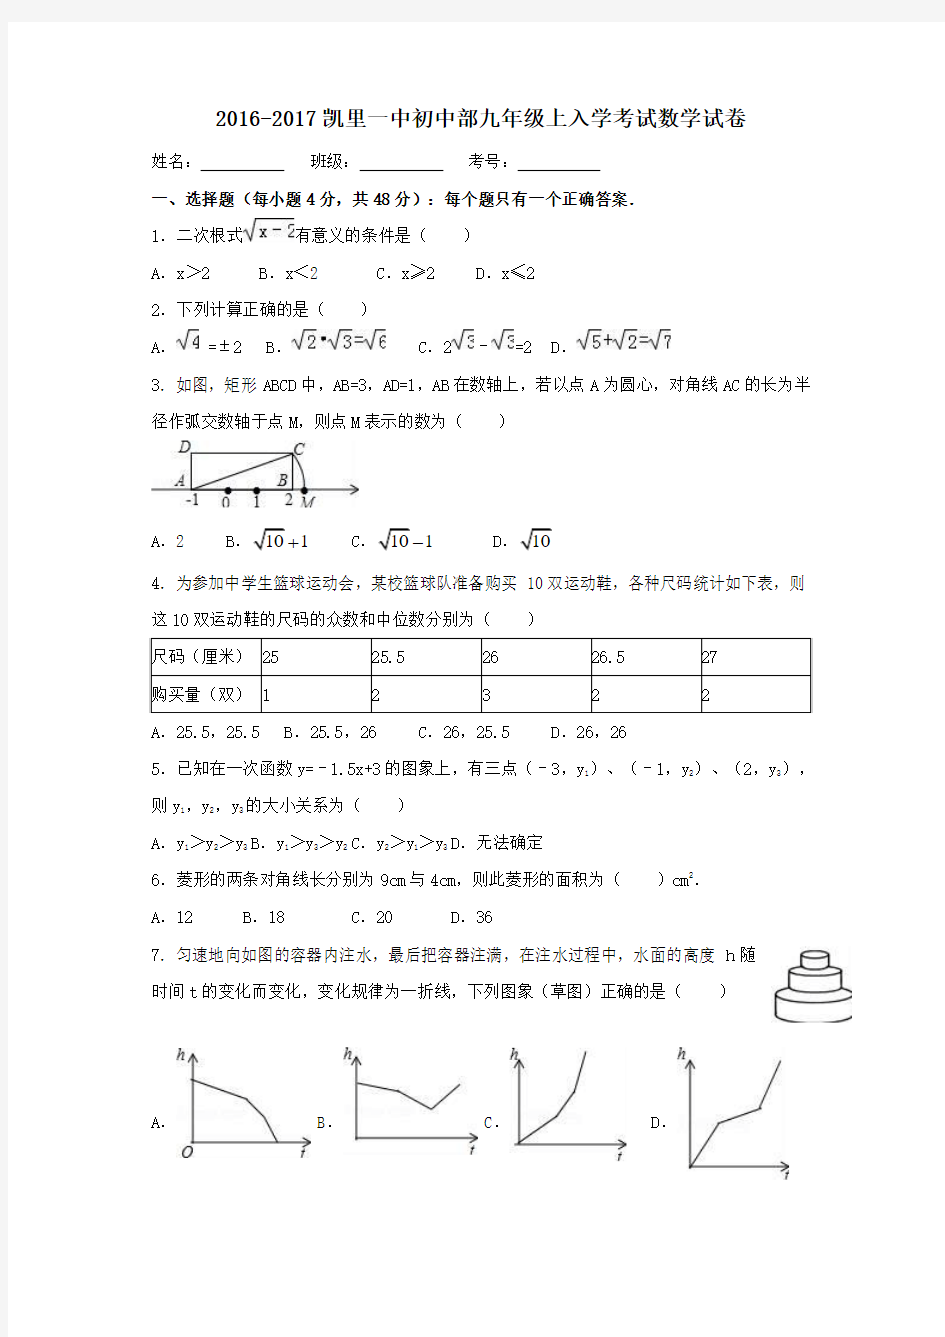 贵州省凯里市第一中学2017届九年级第一学期入学考试数学试卷(无答案)